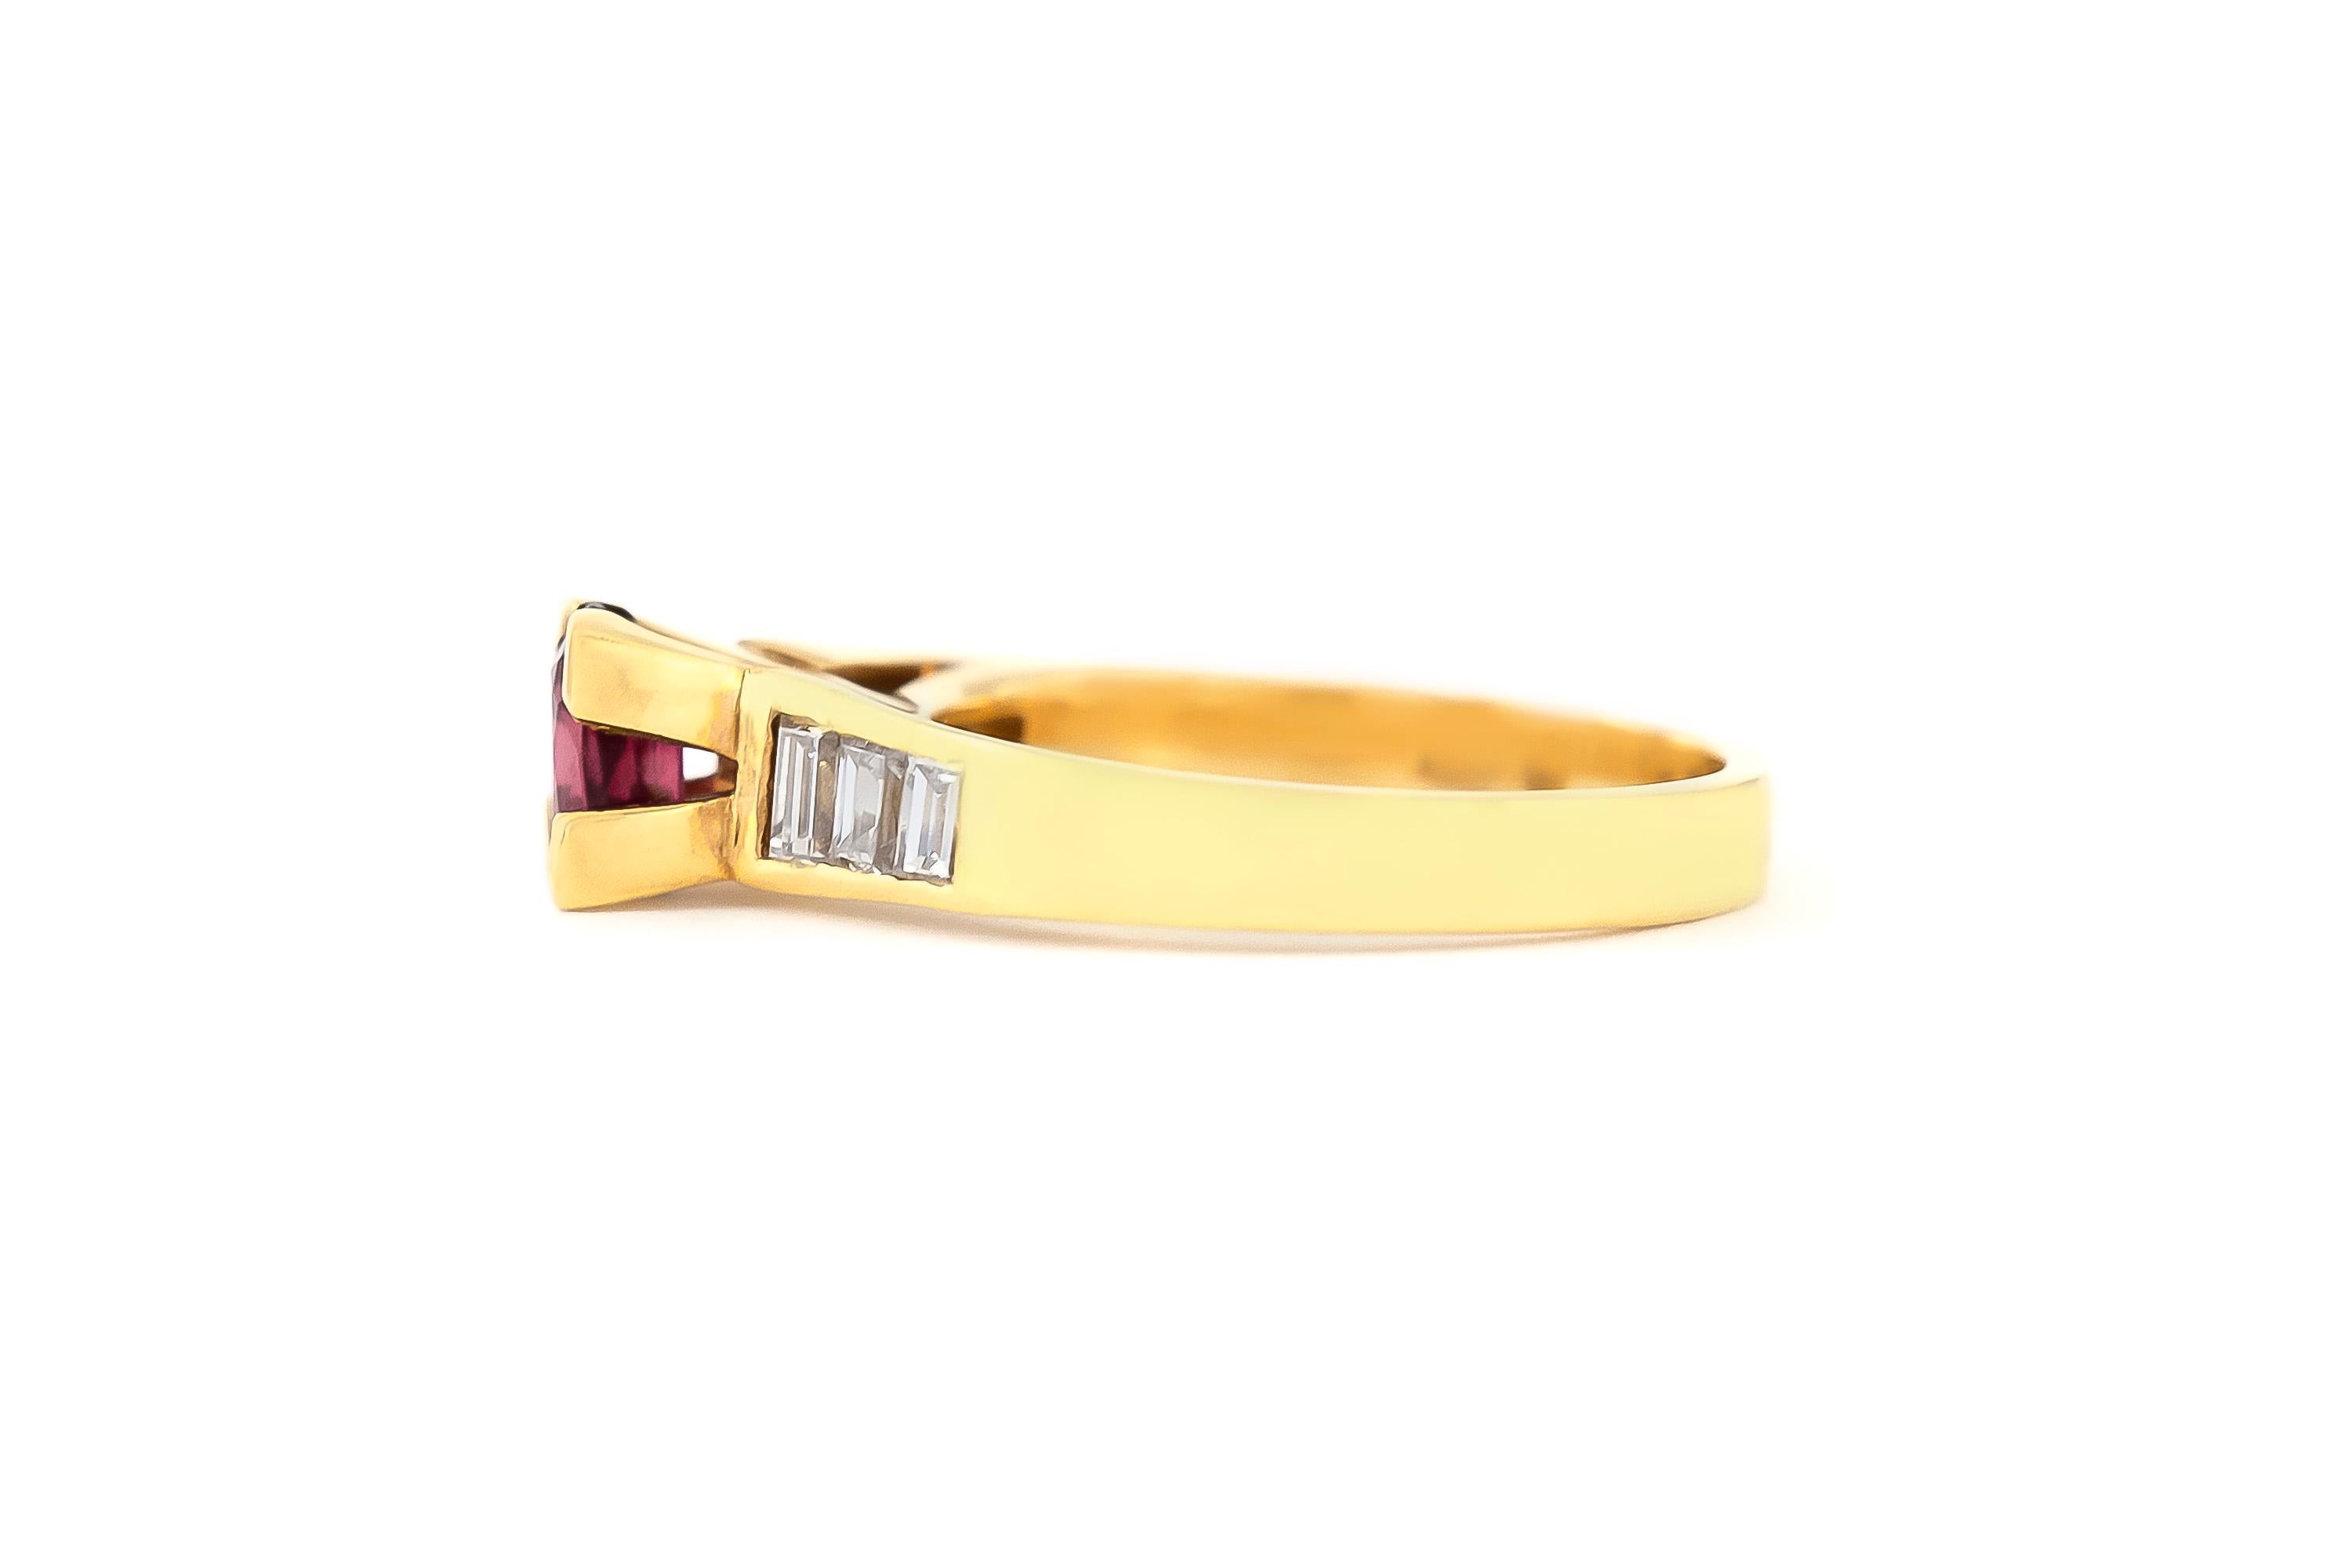 Der Ring ist fein in Handarbeit in 18k Gelbgold mit Zentrum Rubin mit einem Gesamtgewicht von etwa 0,80 Karat und Diamanten mit einem Gesamtgewicht von etwa 0,50 Karat.
Ca. 1970.